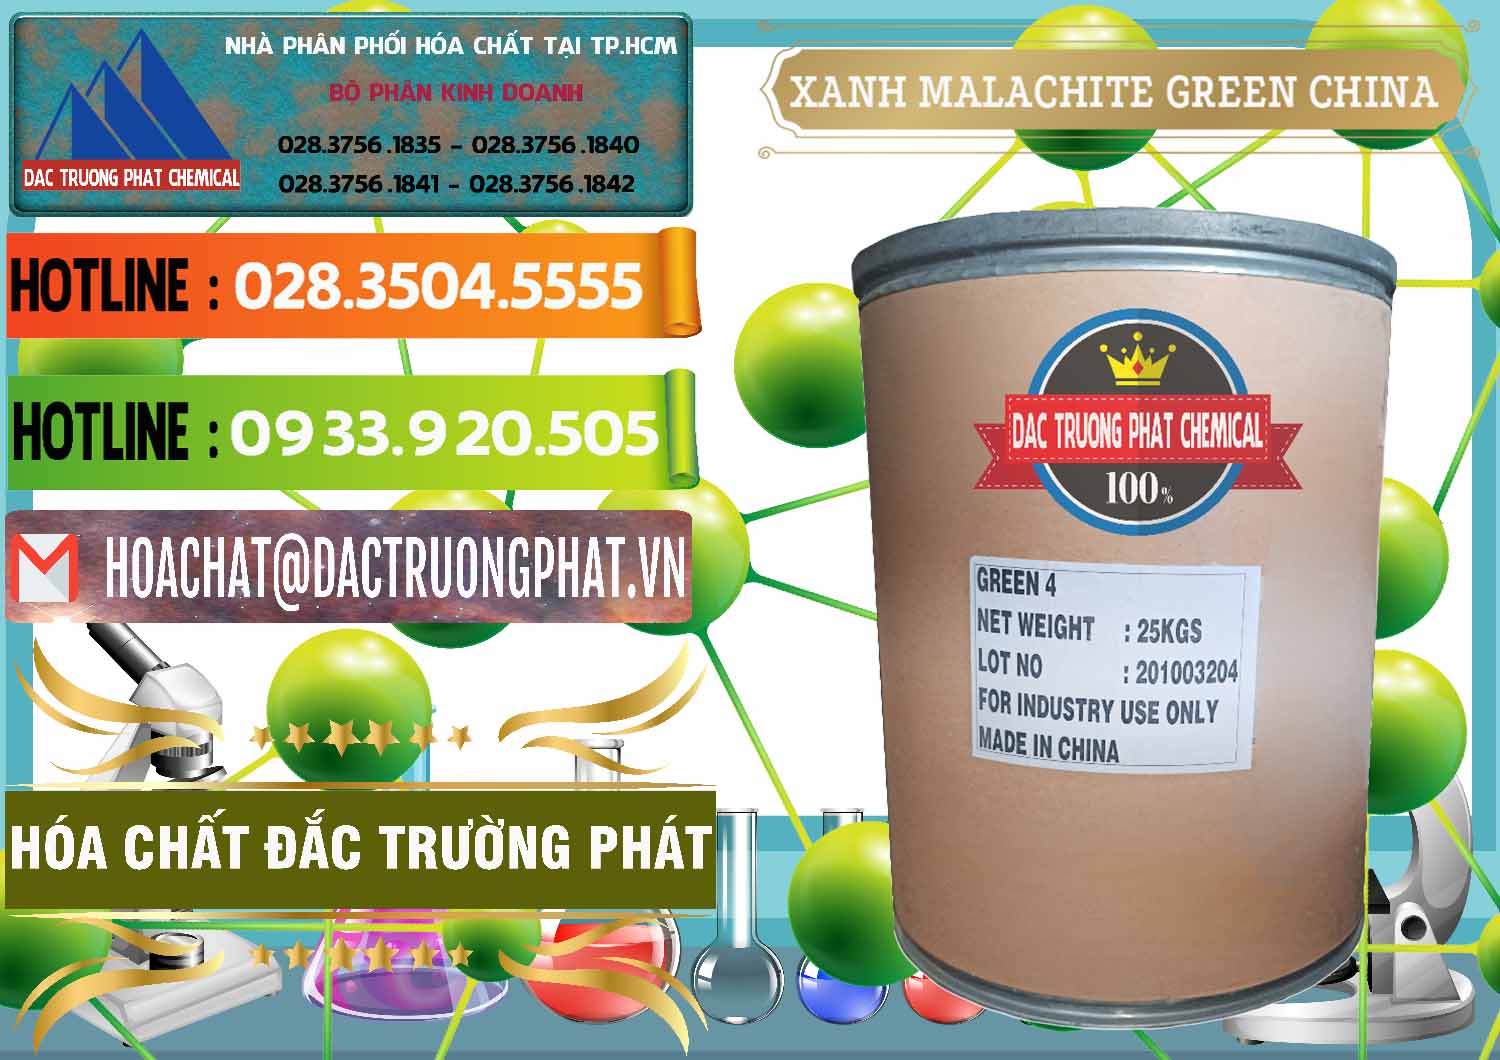 Công ty chuyên kinh doanh - bán Xanh Malachite Green Trung Quốc China - 0325 - Bán _ phân phối hóa chất tại TP.HCM - cungcaphoachat.com.vn